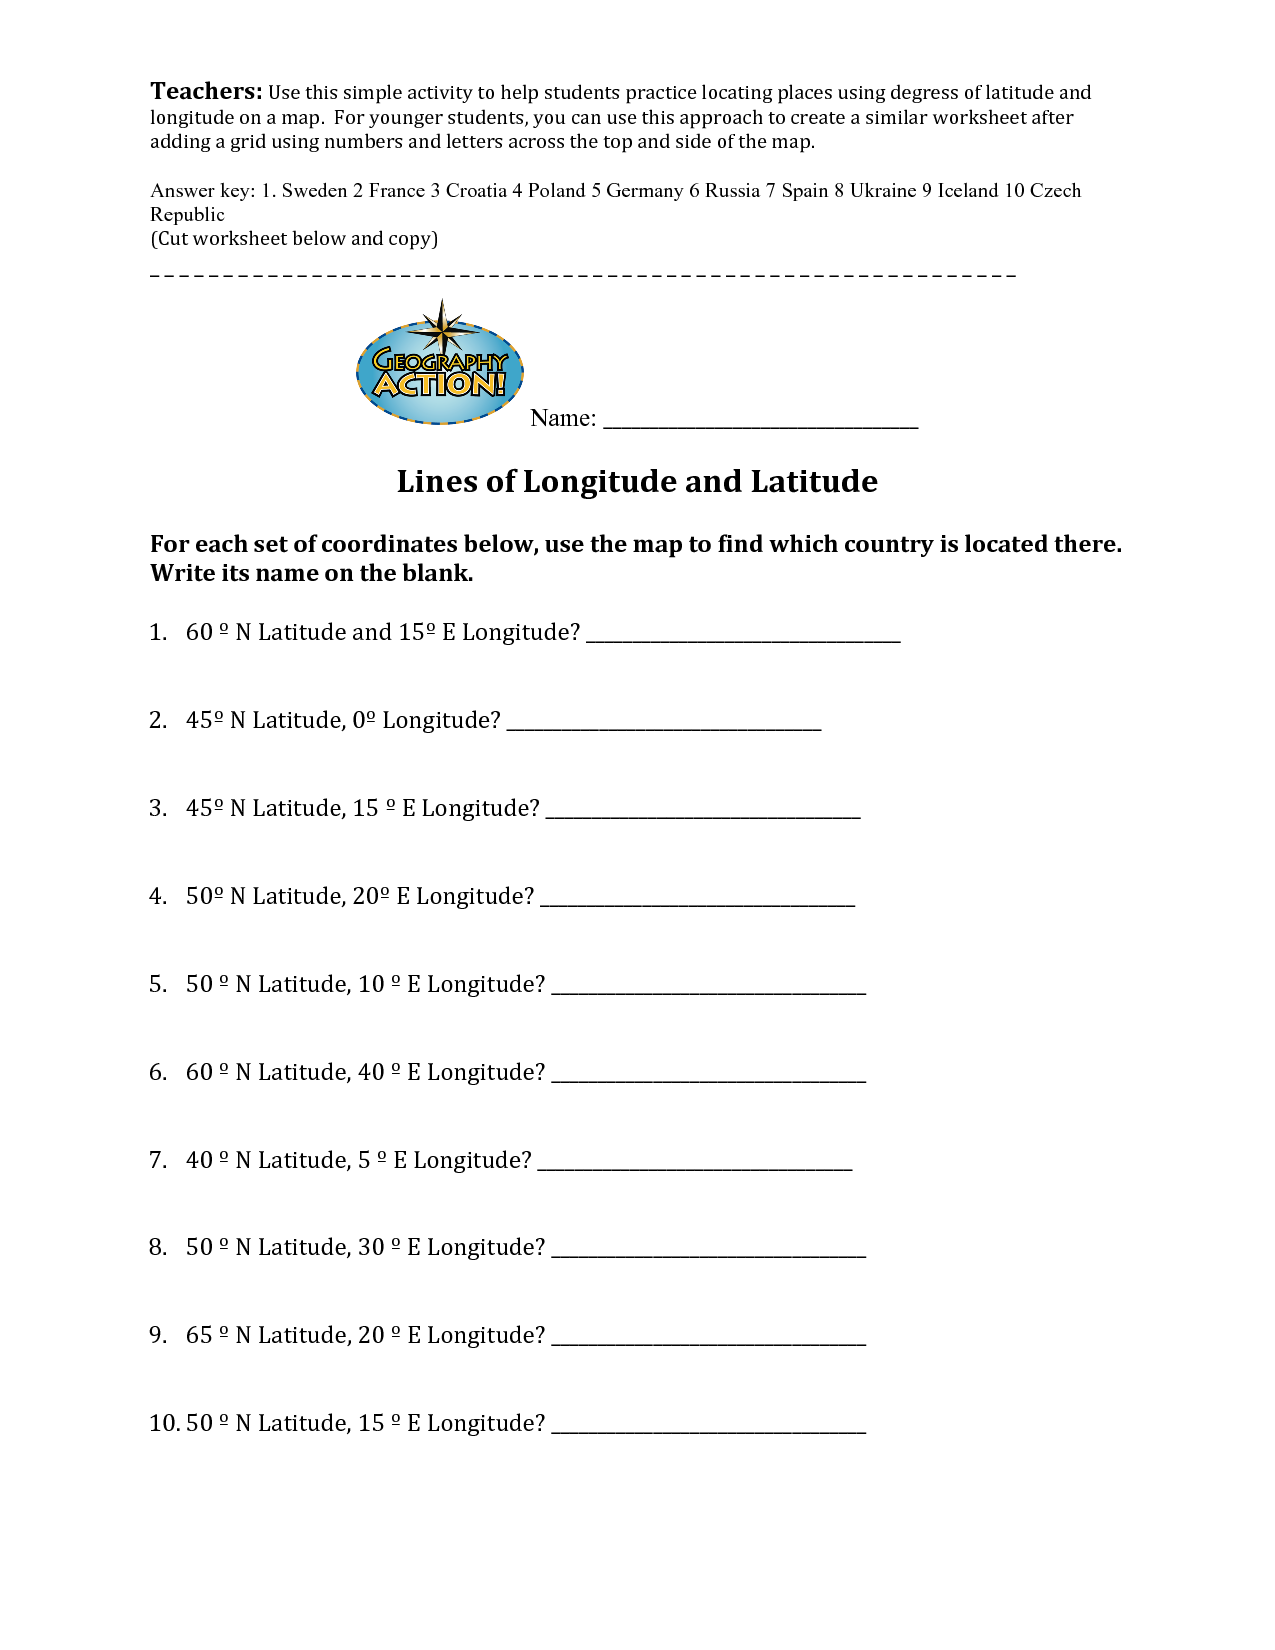 Latitude and Longitude Worksheets Answers